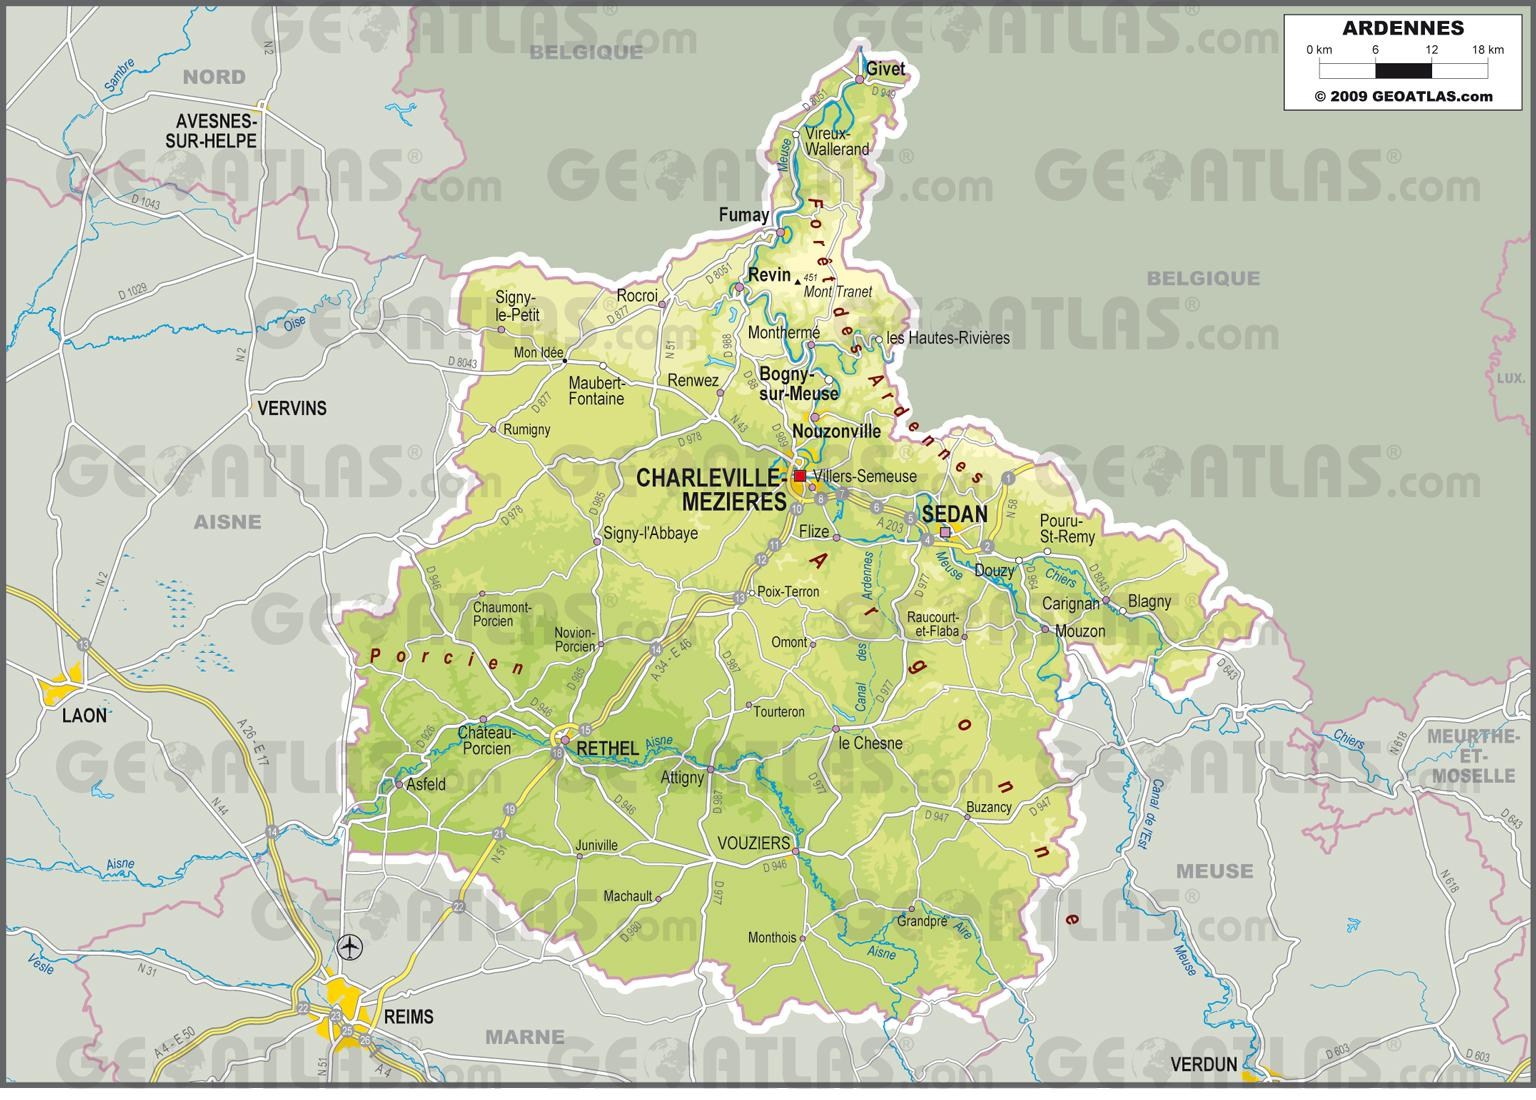 Ardennes Carte » Vacances - Arts- Guides Voyages dedans Meuble Belge Reims